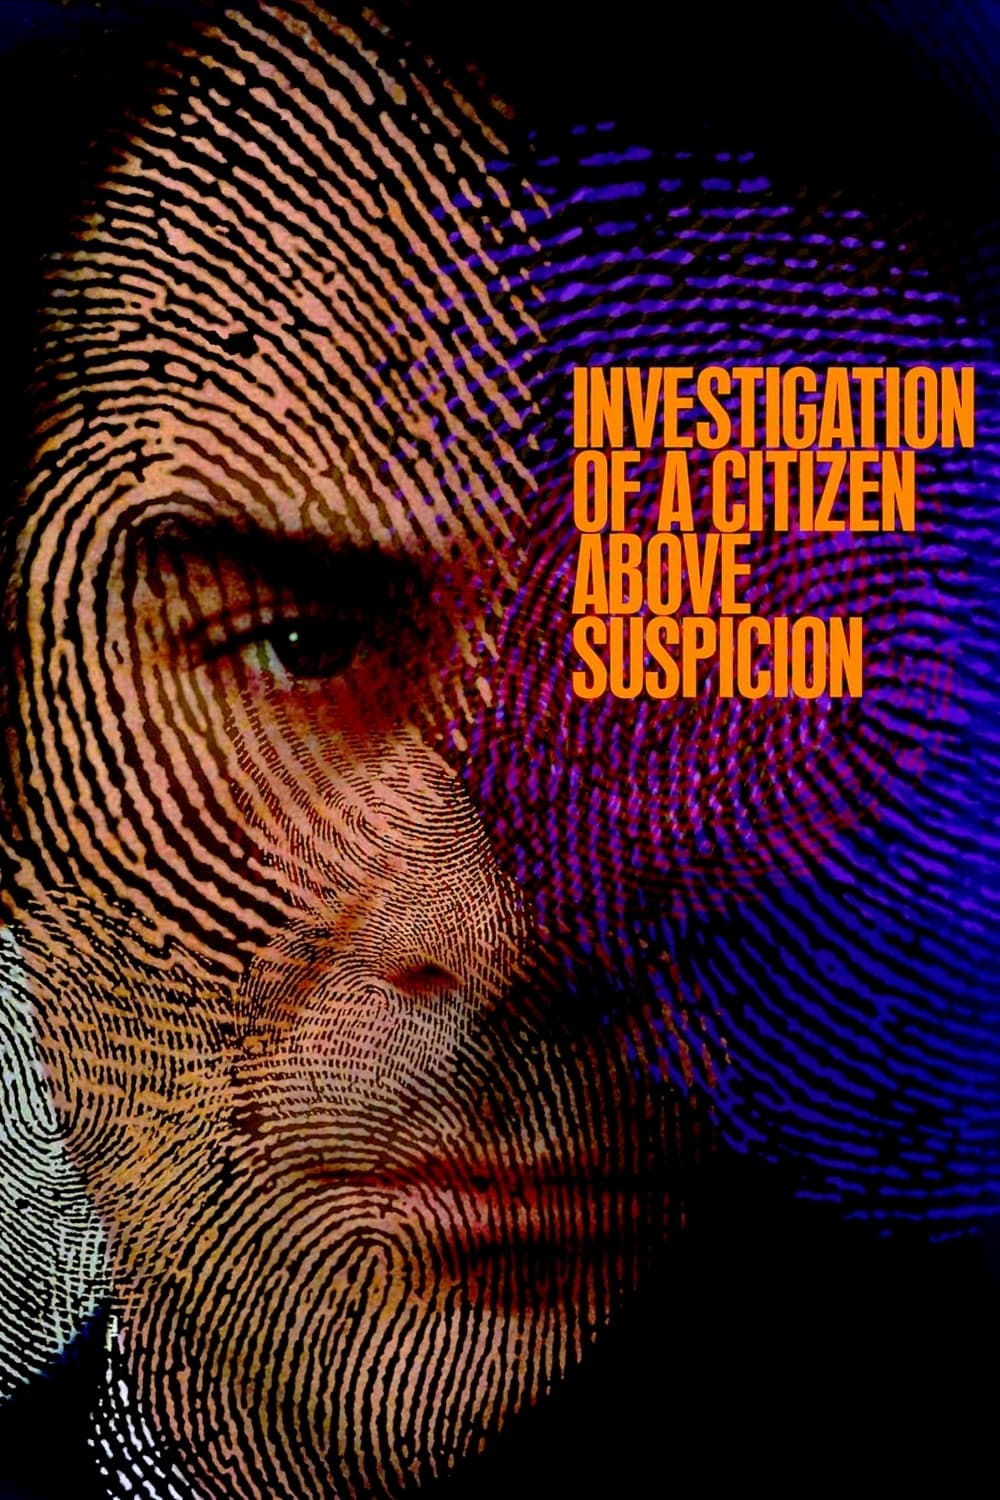 Ermittlungen gegen einen über jeden Verdacht erhabenen Bürger (1970)